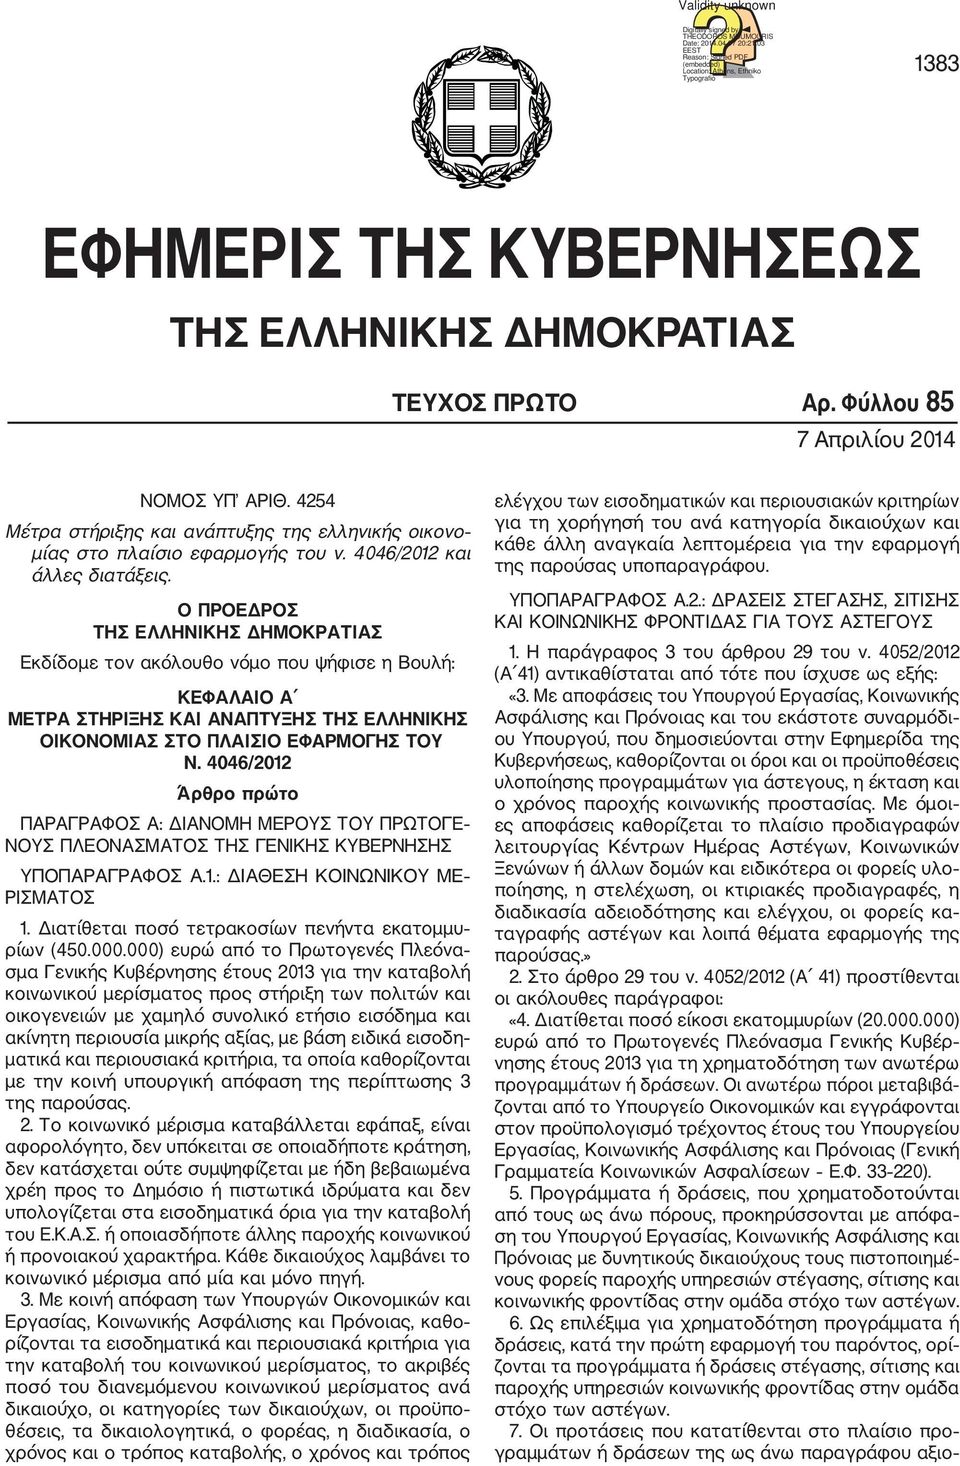 4254 Μέτρα στήριξης και ανάπτυξης της ελληνικής οικονο μίας στο πλαίσιο εφαρμογής του ν. 4046/2012 και άλλες διατάξεις.